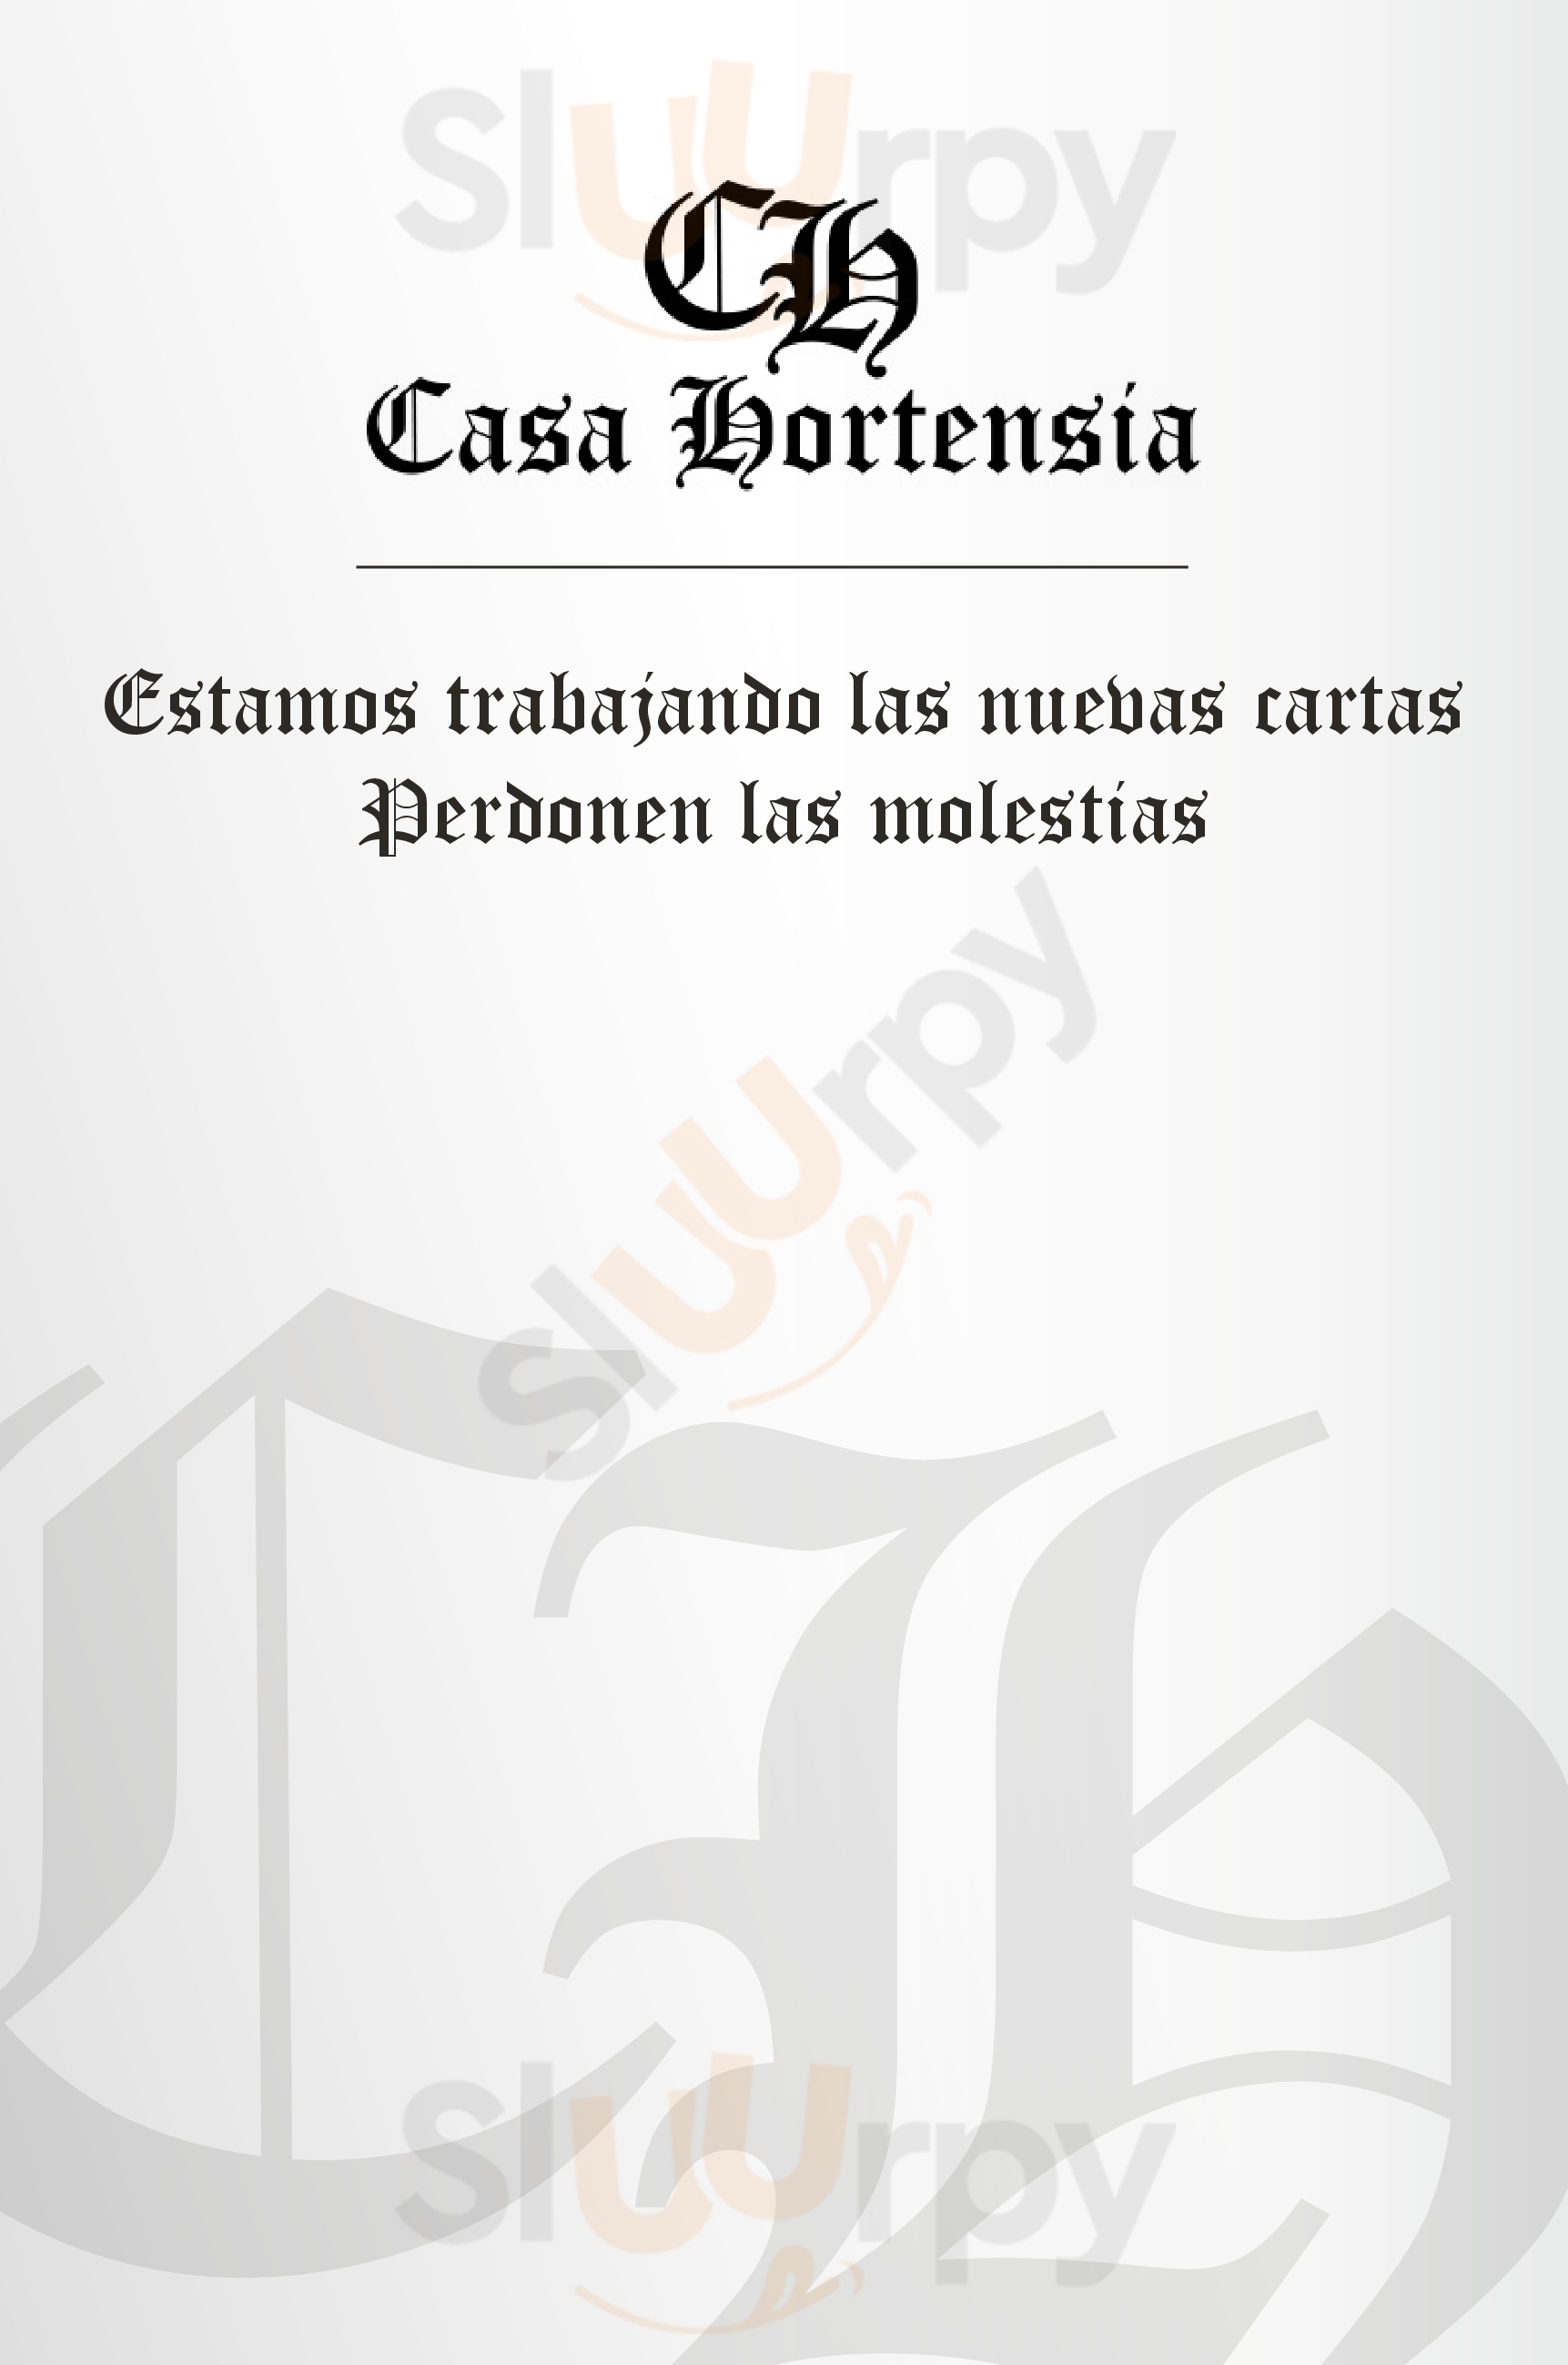 Casa Hortensia Restaurante & Sidrería Madrid Menu - 1